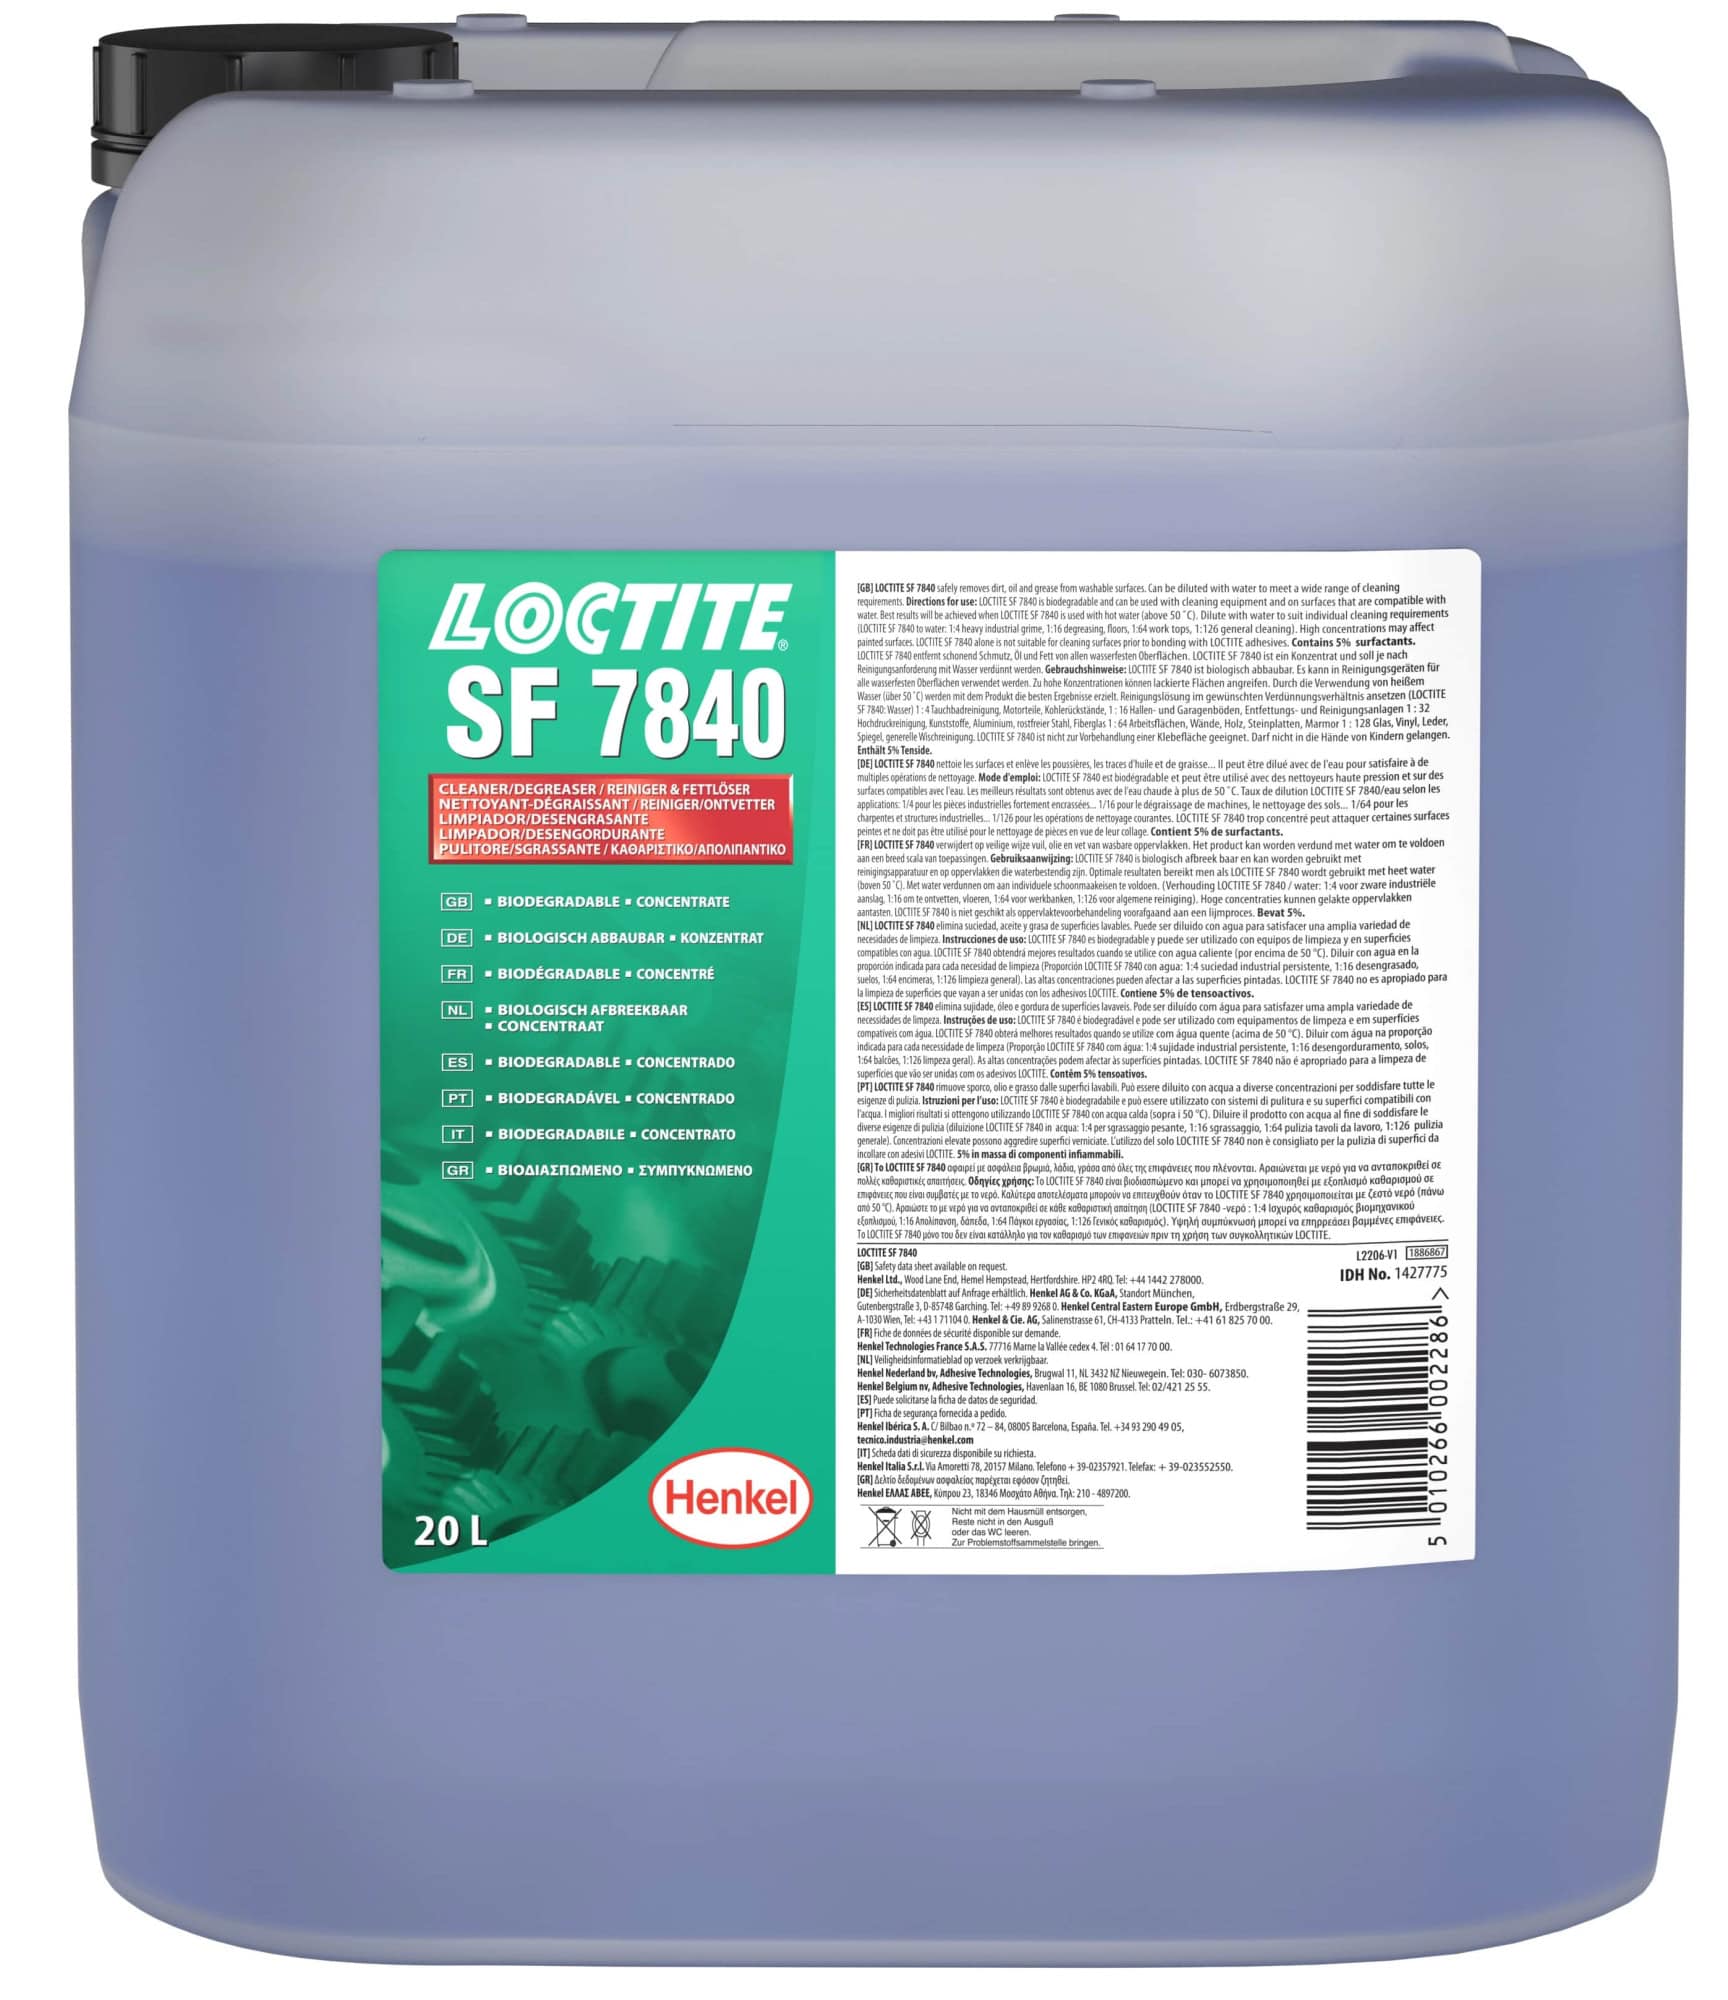 Henkel™ Loctite® Reiniger SF 7840, 20 L, Kannister, Universell anwendbar